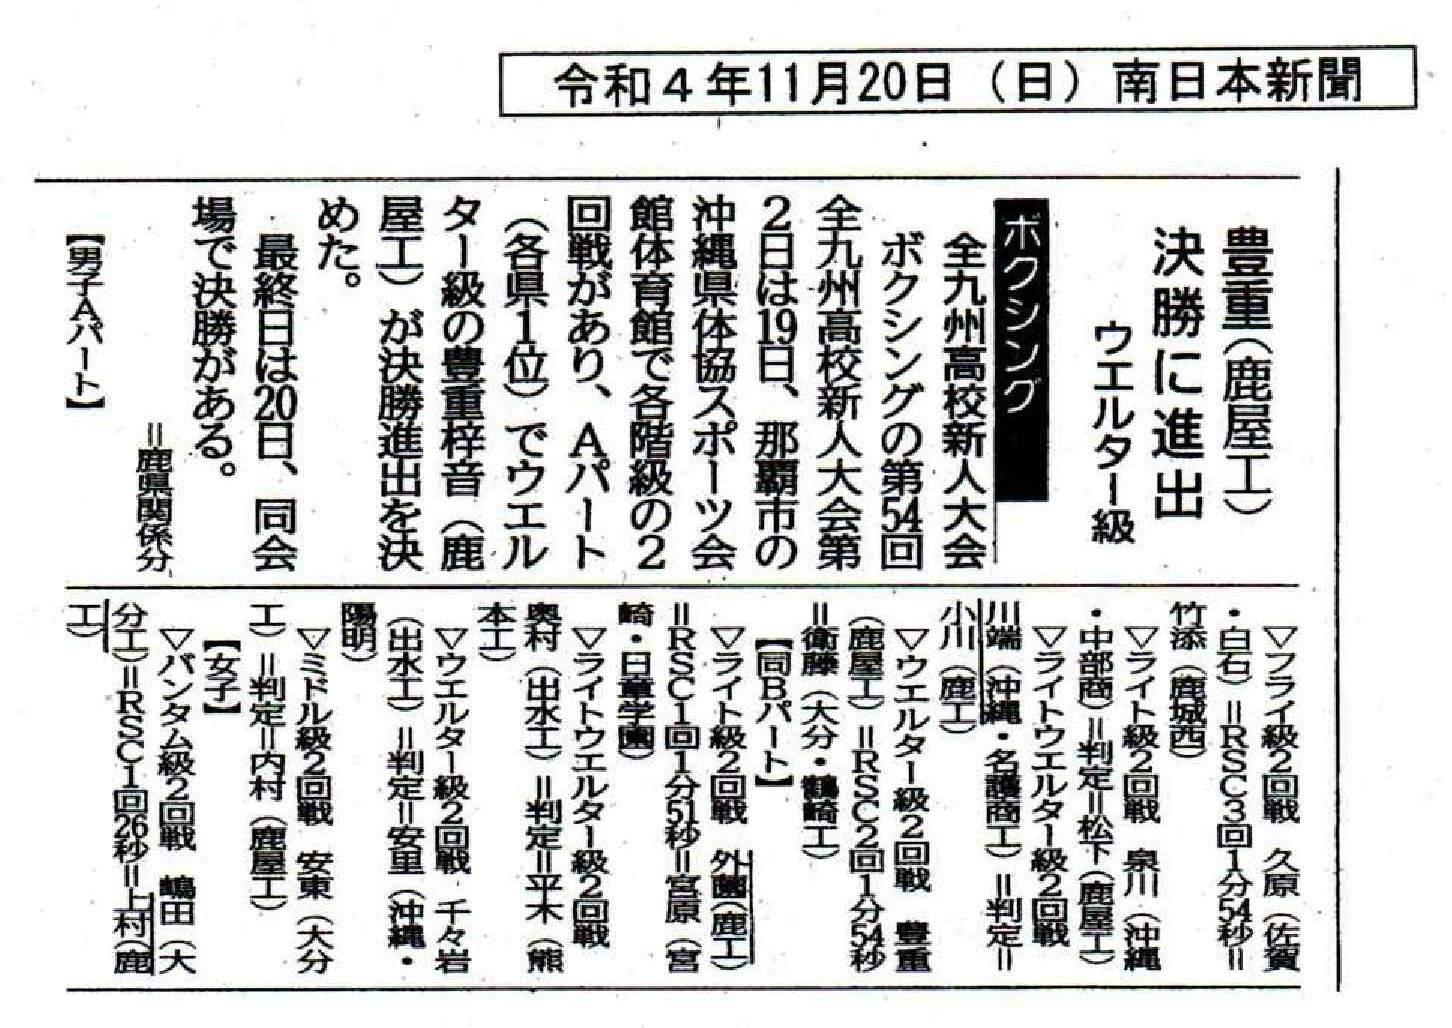 R041120_ボクシング 南日本新聞